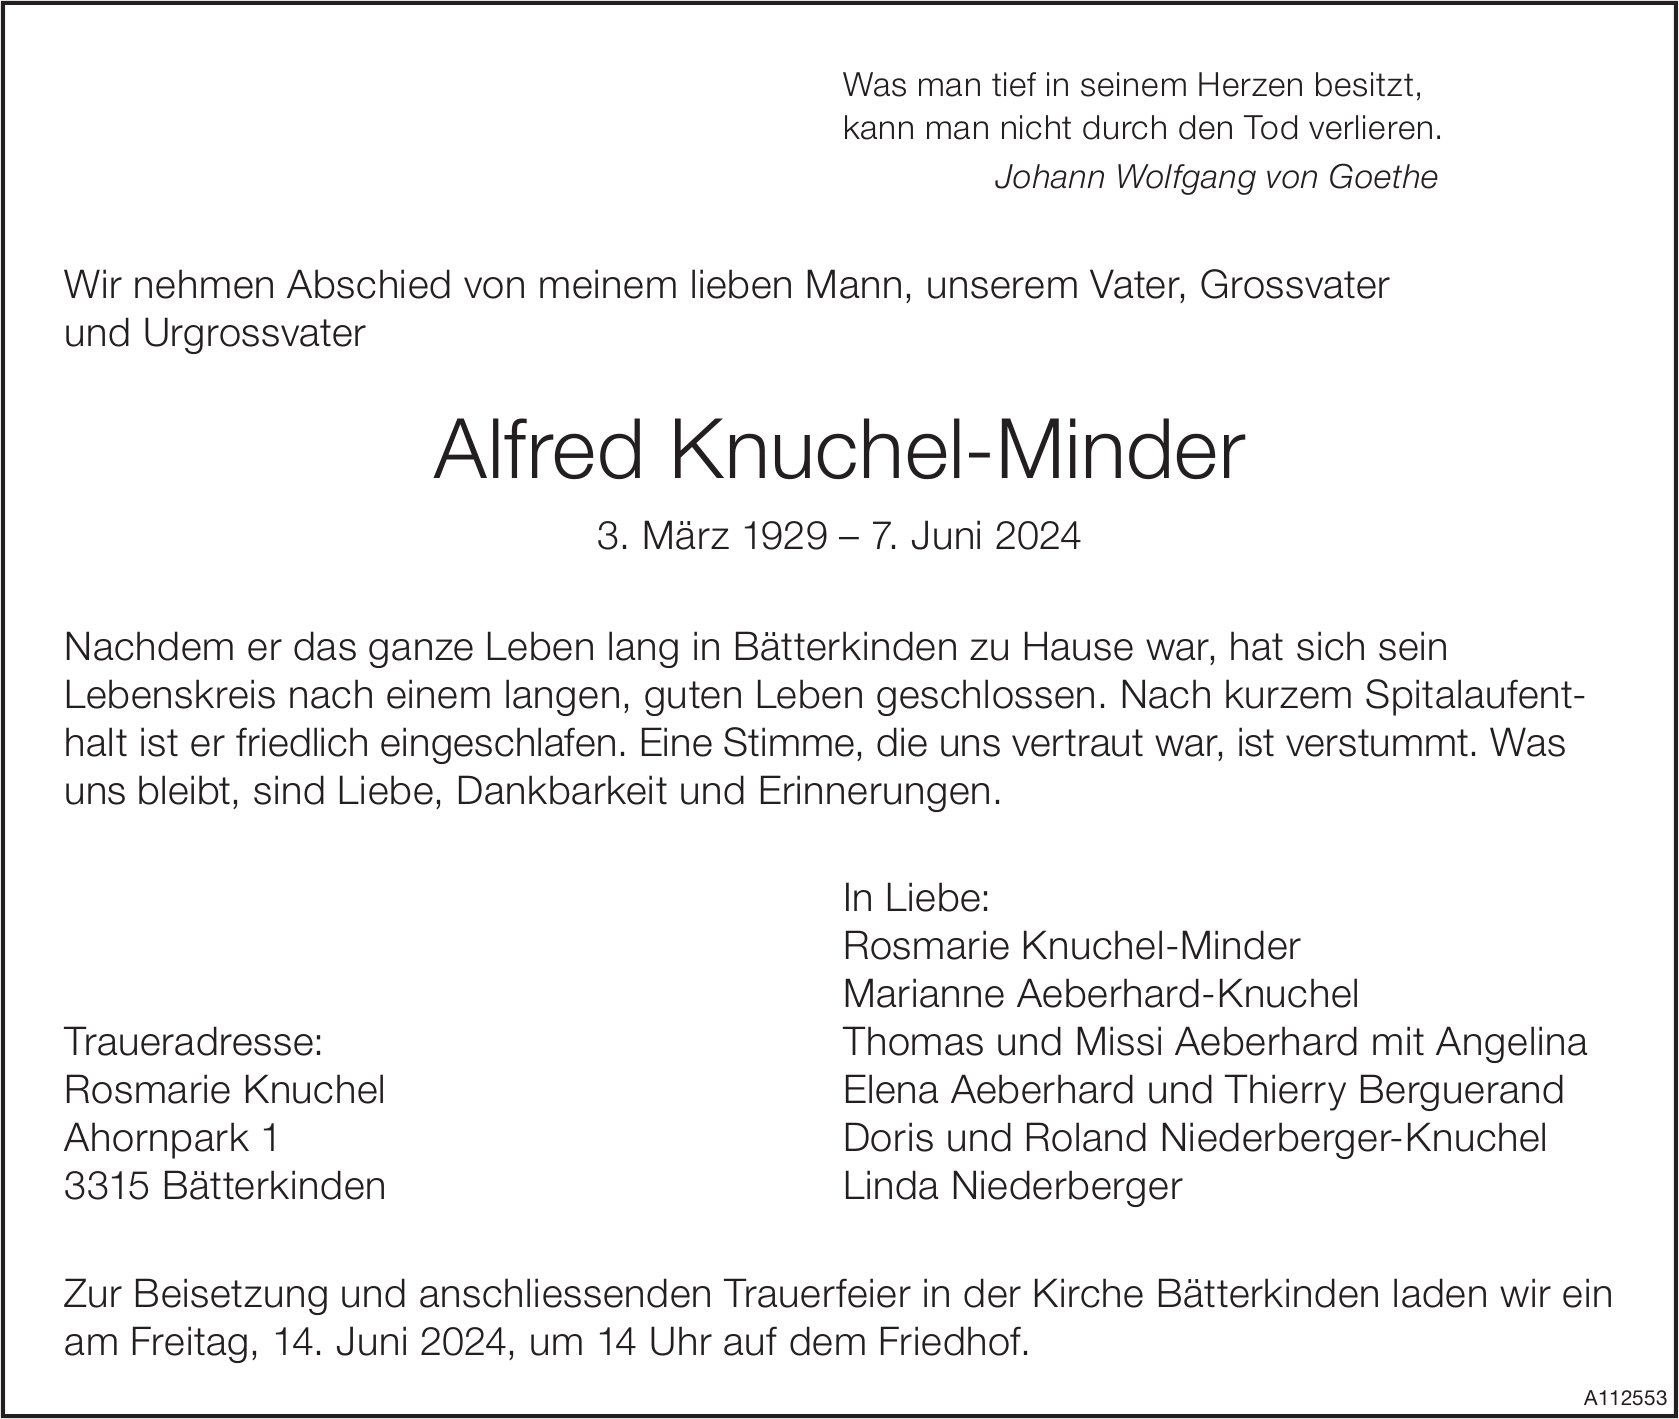 Alfred Knuchel-Minder, Juni 2024 / TA